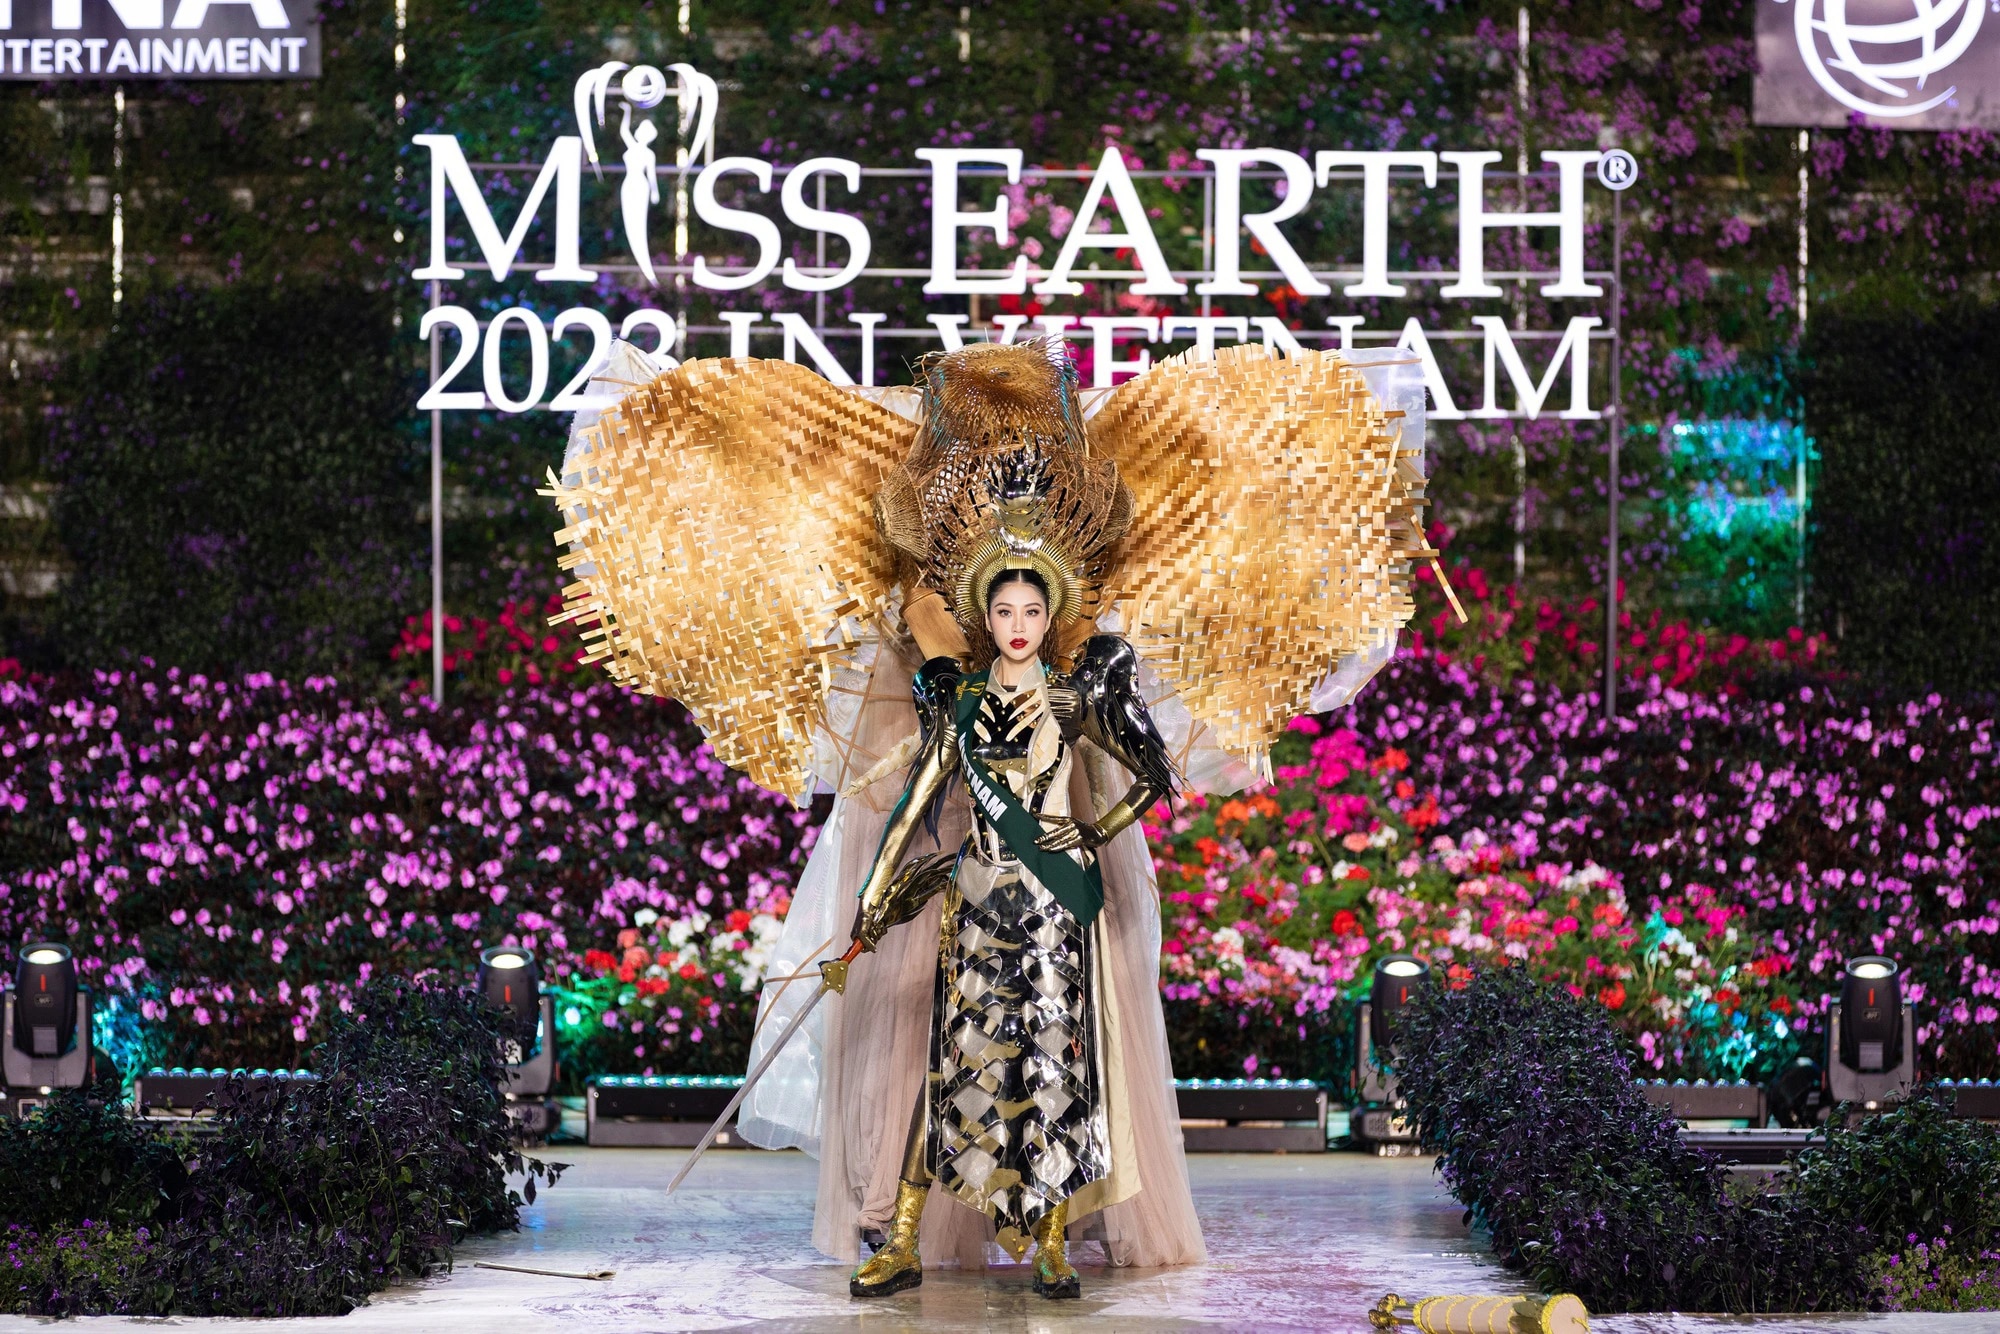 Bán kết Miss Earth 2023 màn trình Trang phục Dân tộc bùng nổ hình ảnh cỏ hoa, muông thú - Ảnh 3.